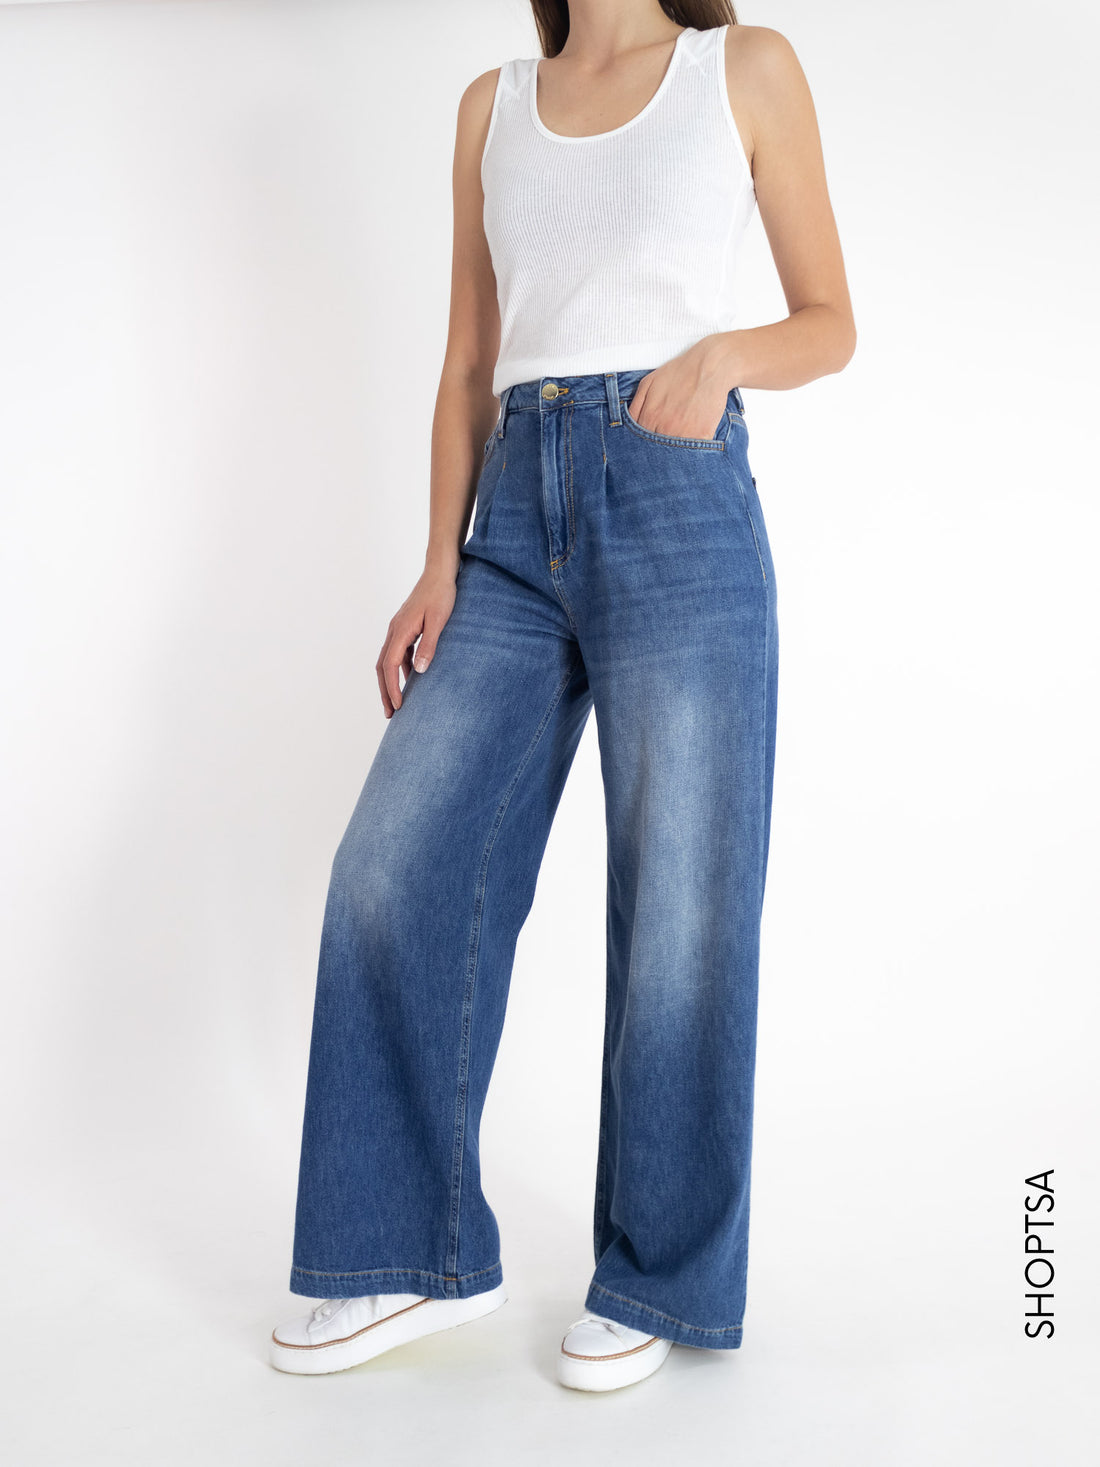 Jeans palazzo dy5015 - ViCOLO